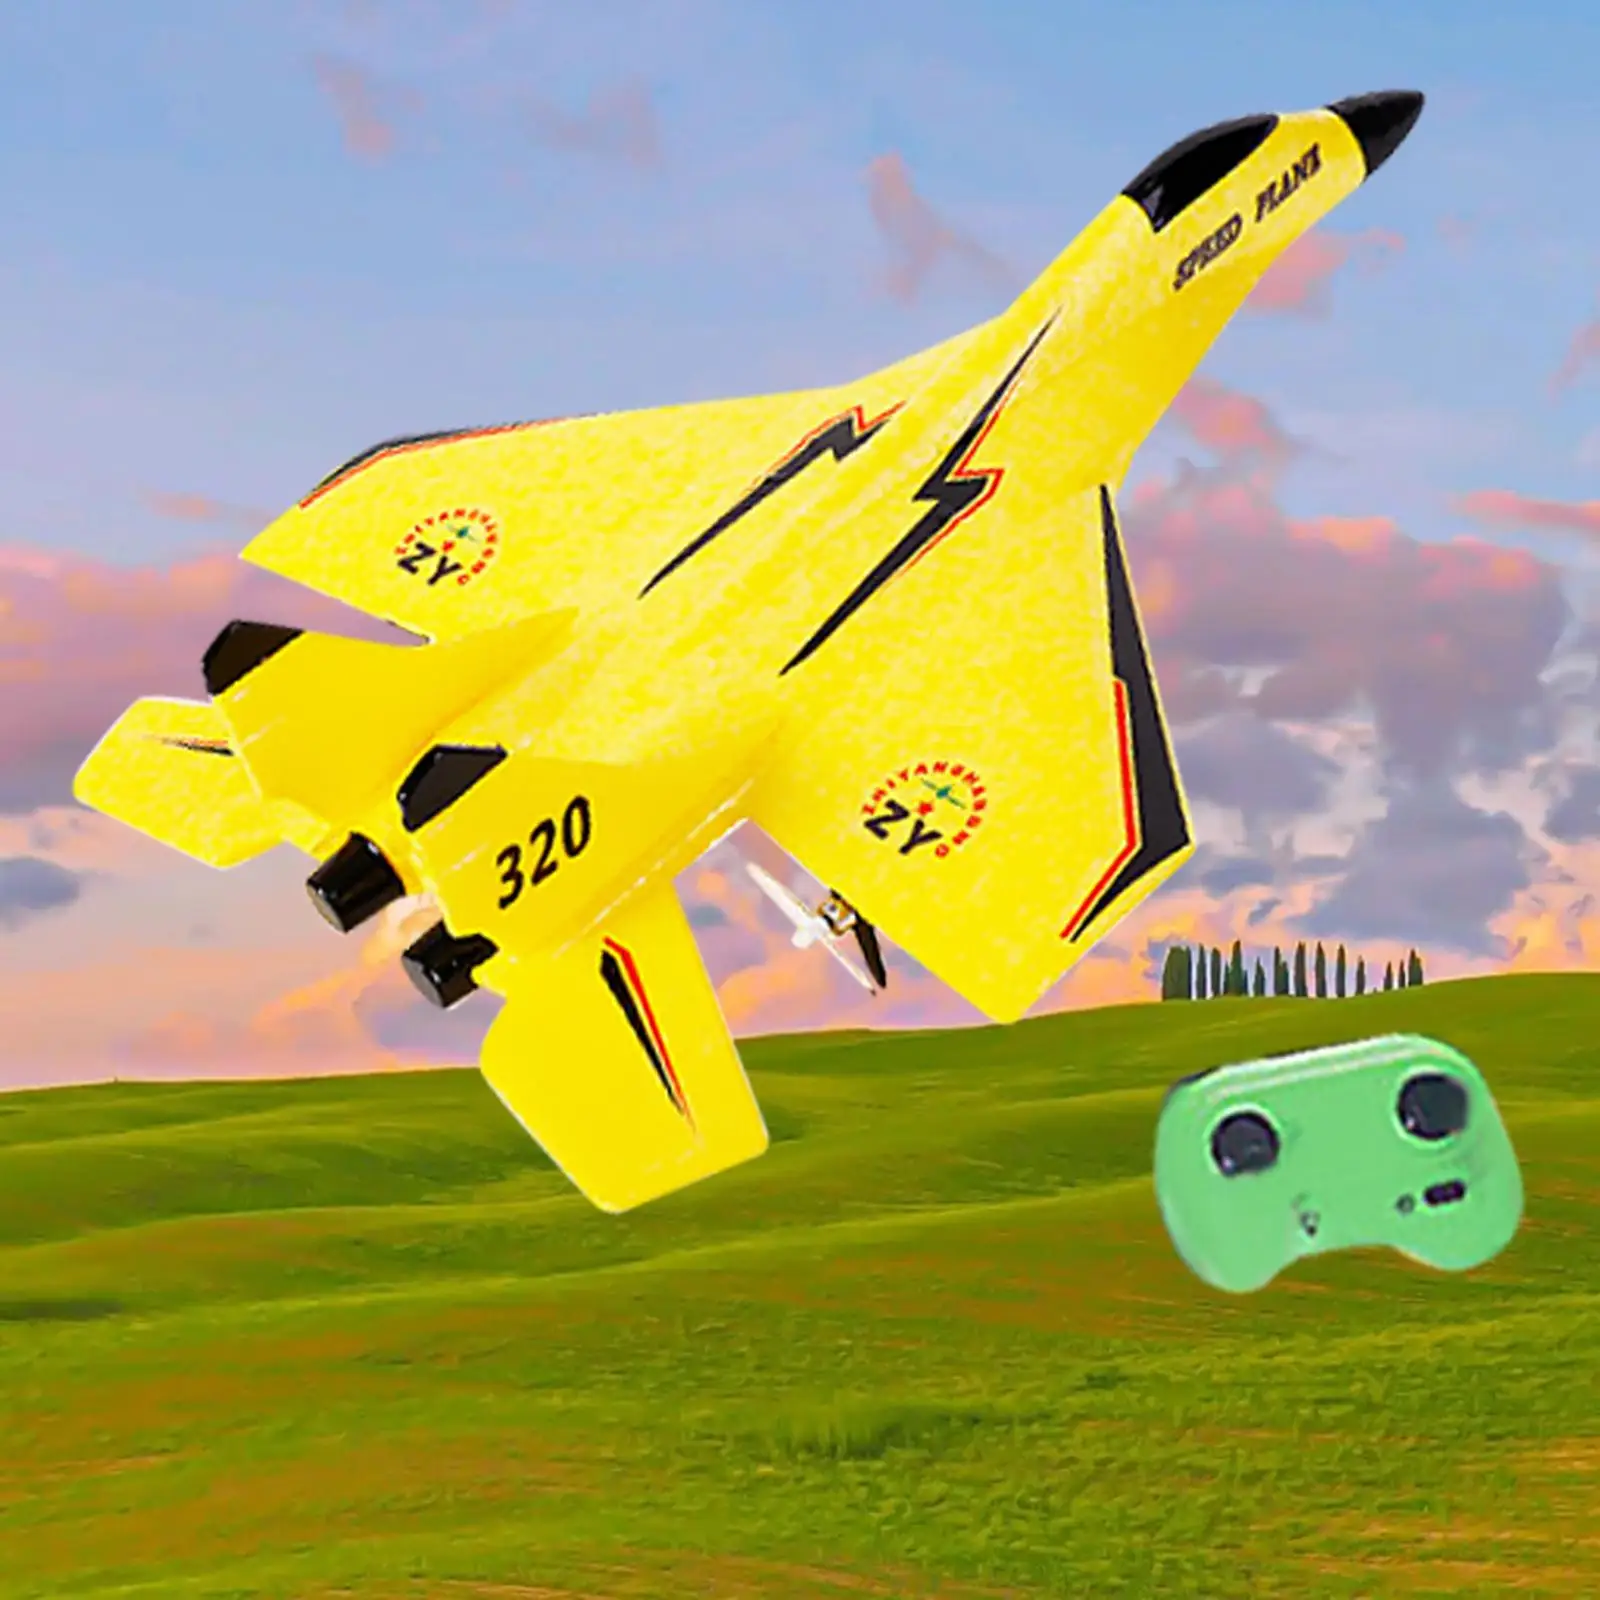 

Игрушечные модели самолетов пенопластовый реактивный истребитель со вспышкой, планер с дистанционным управлением для парковки, для активного отдыха, для начинающих, подарок для мальчика